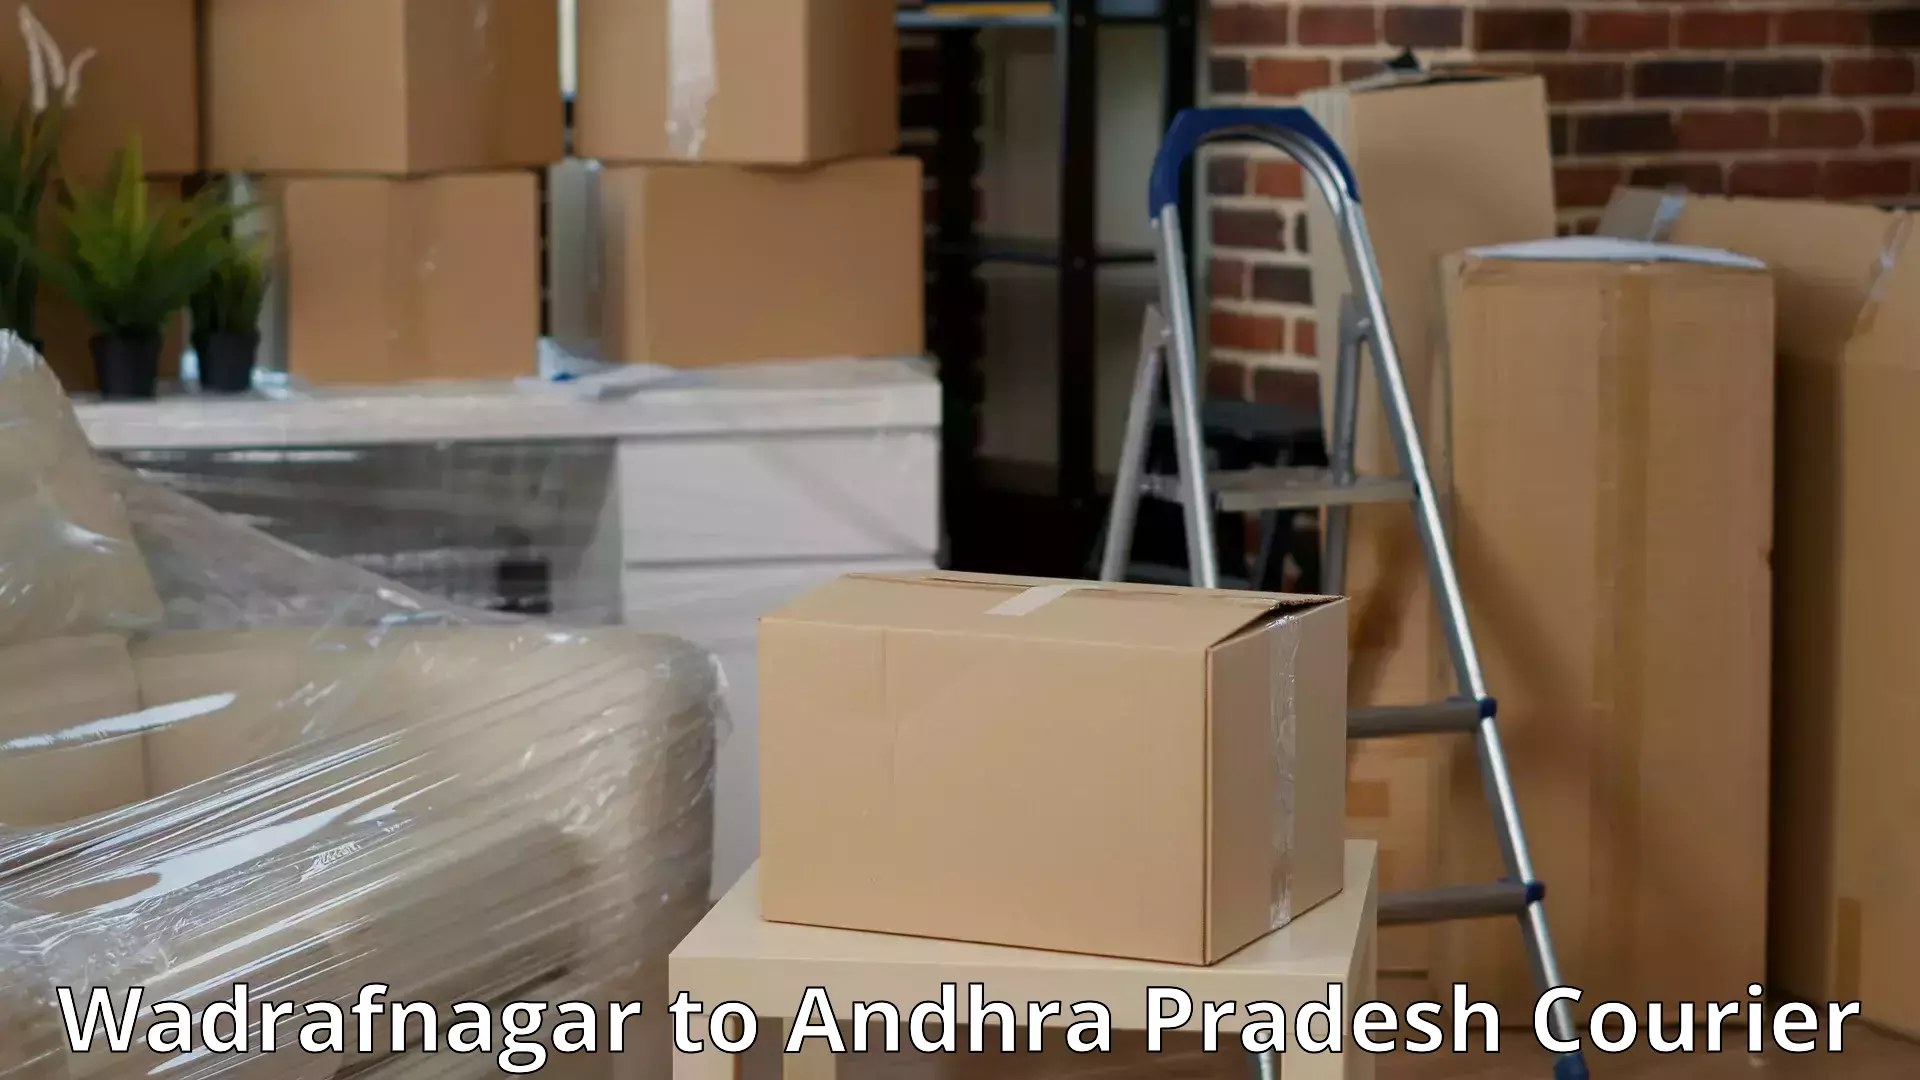 Efficient household movers Wadrafnagar to Srungavarapukota SKota